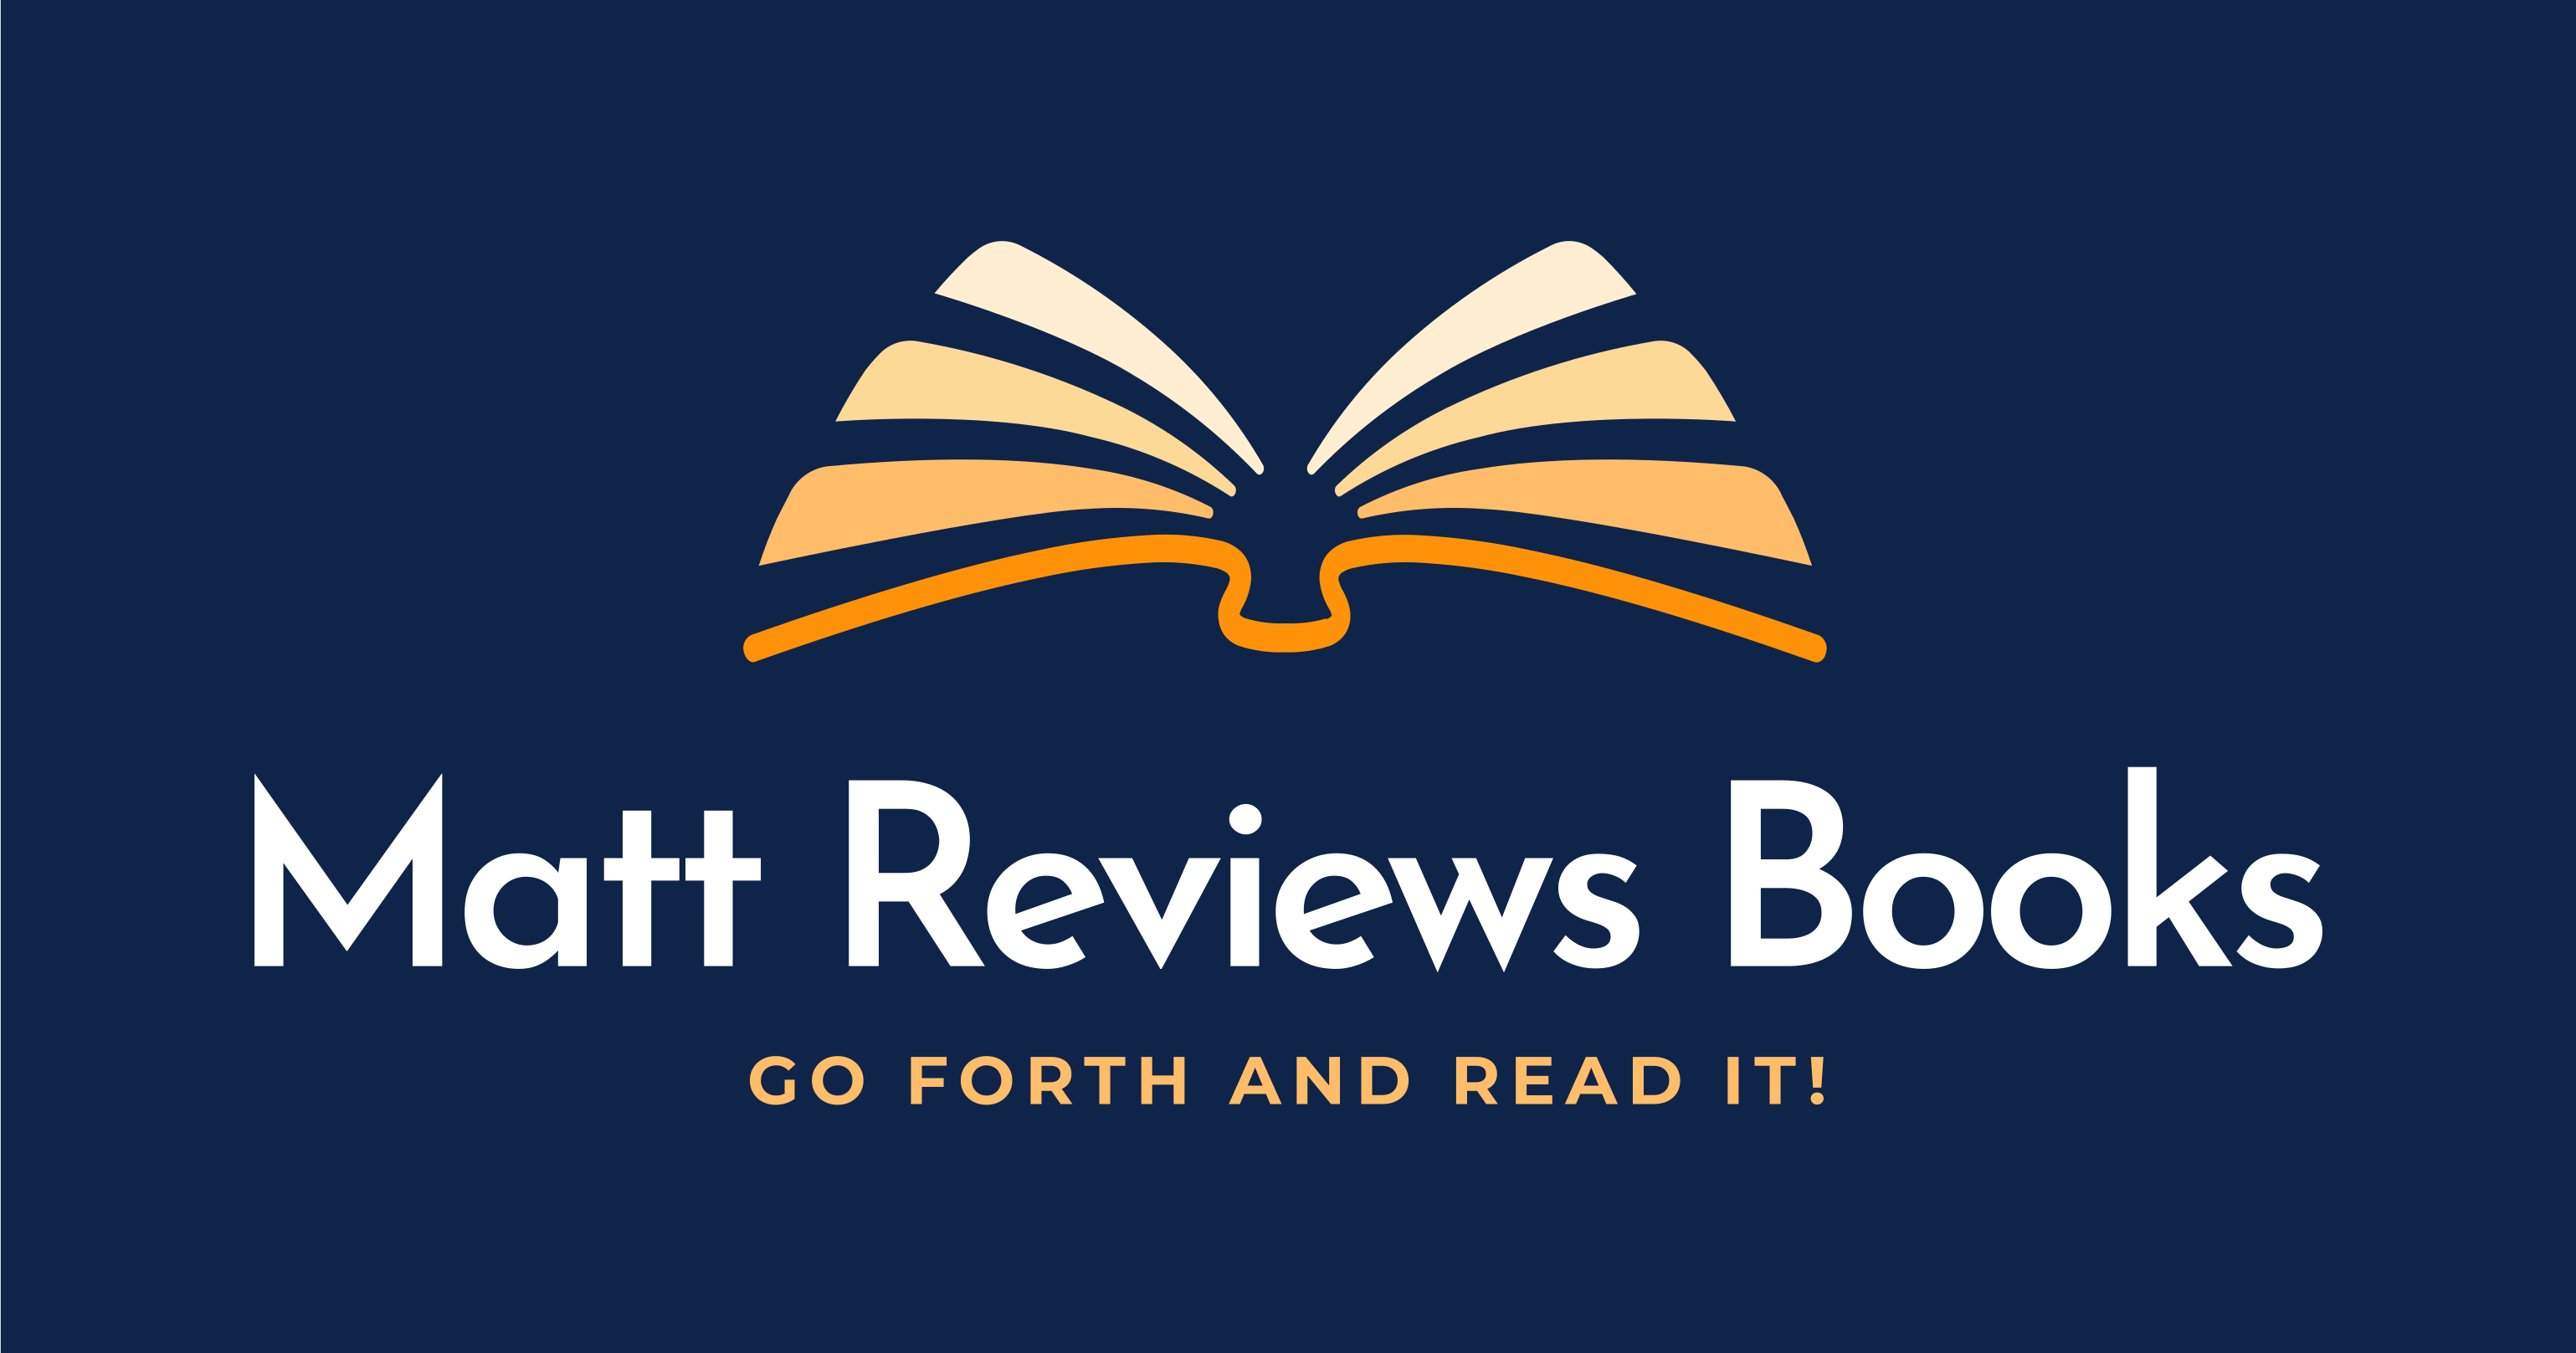 Matt Reviews Books